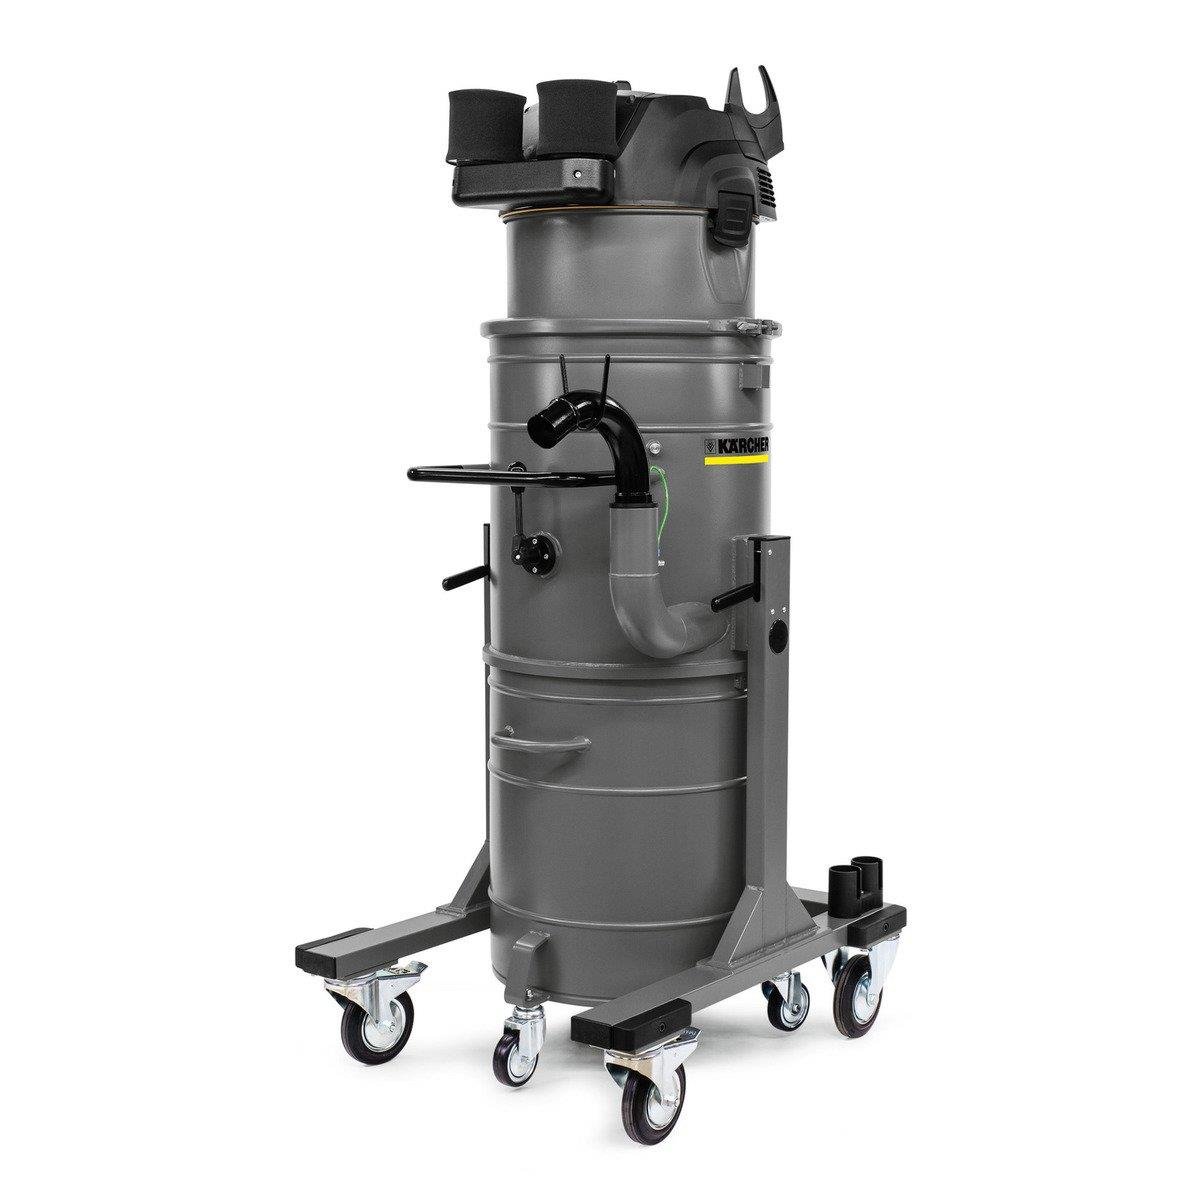 Karsher Industrial Water Vacuum cleaner